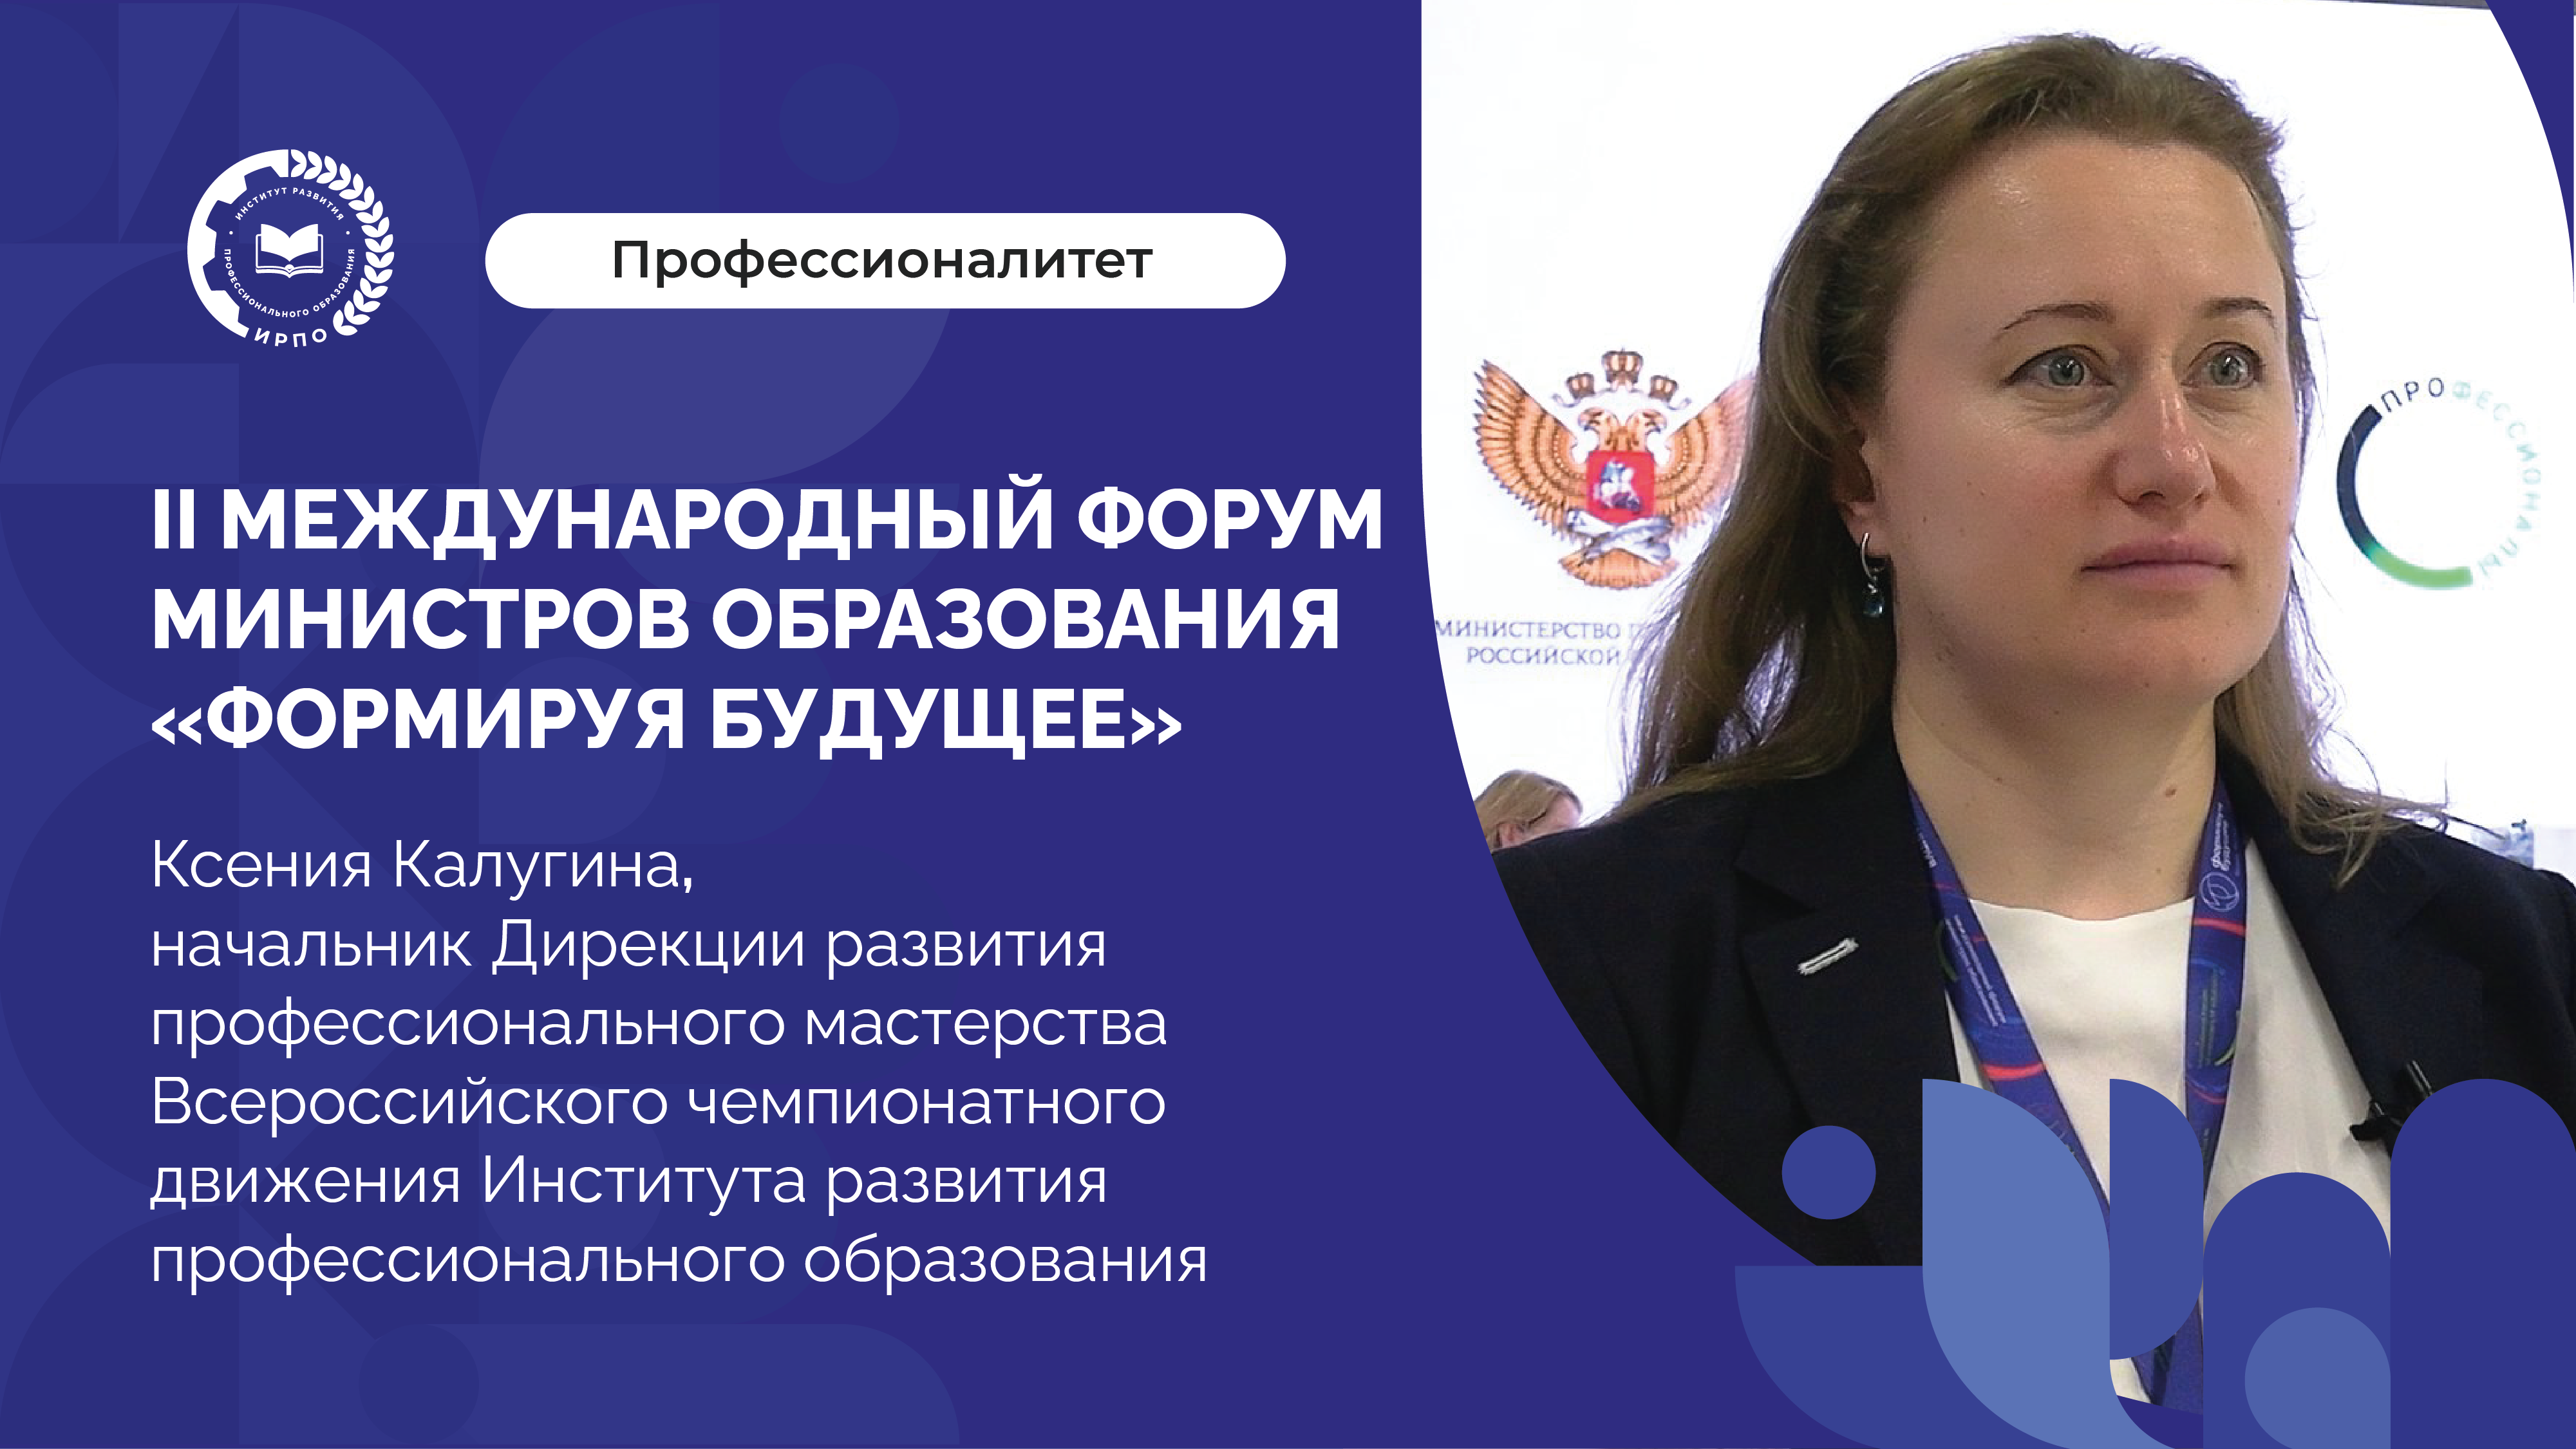 II Форум министров образования: Всероссийское чемпионатное движение по профессиональному мастерству